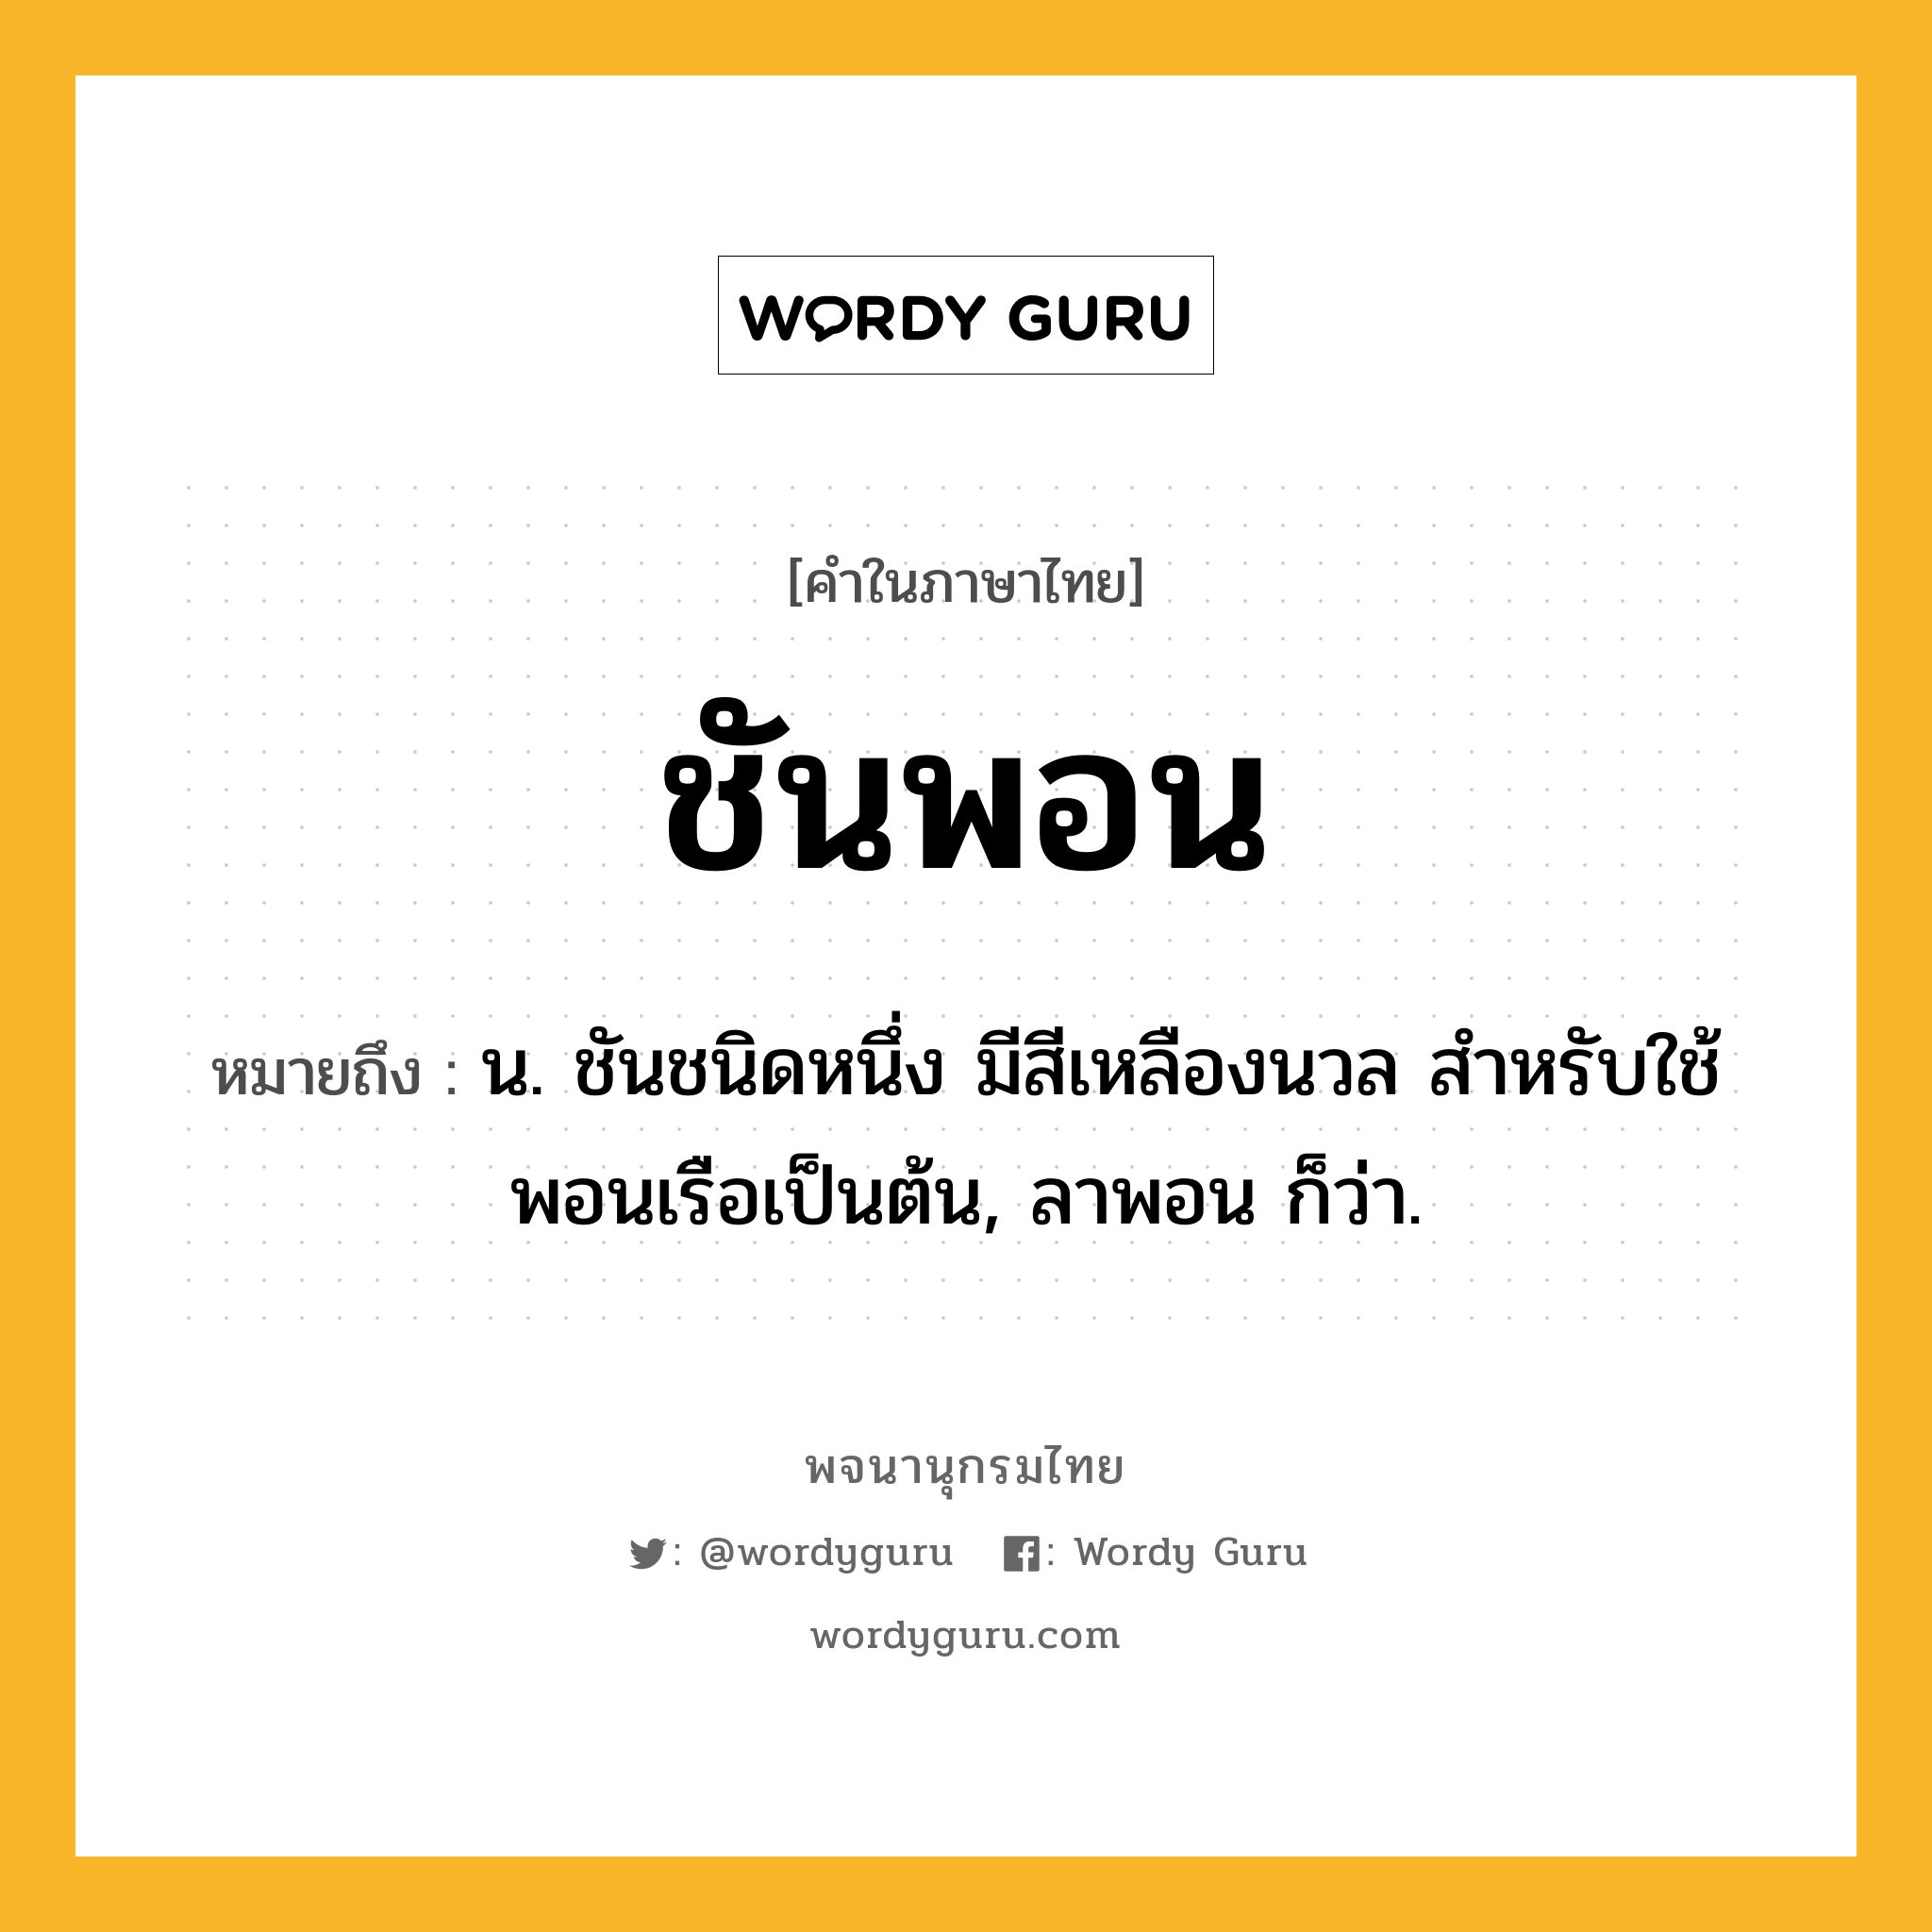 ชันพอน หมายถึงอะไร?, คำในภาษาไทย ชันพอน หมายถึง น. ชันชนิดหนึ่ง มีสีเหลืองนวล สําหรับใช้พอนเรือเป็นต้น, ลาพอน ก็ว่า.